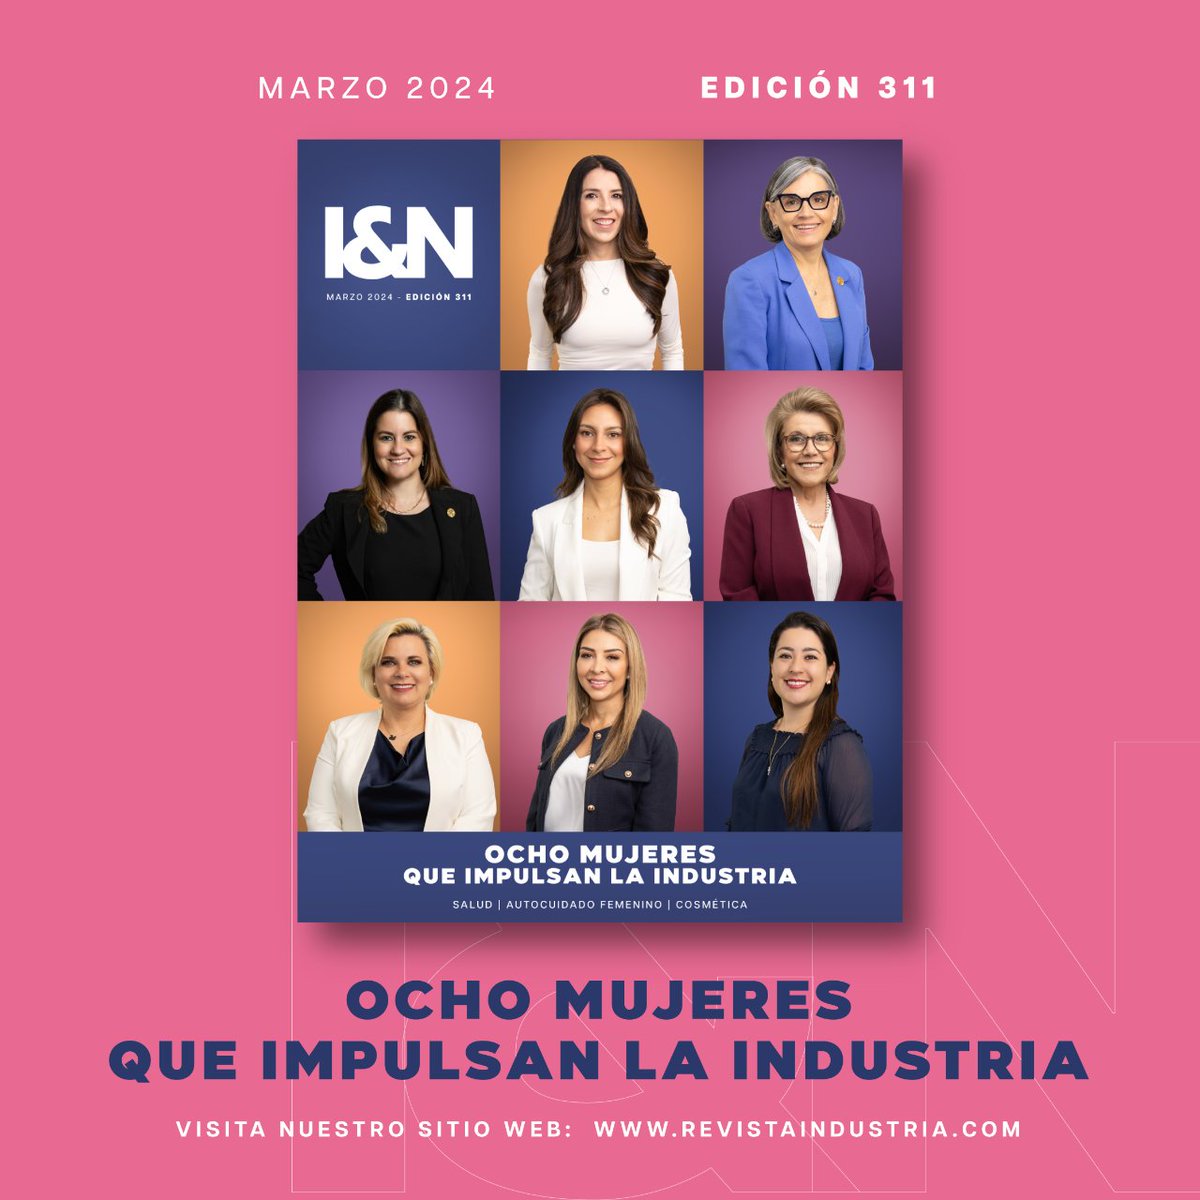 ¡Ya puedes leer la edición de marzo de 2024 de Revista Industria&Negocios! En portada: Ocho mujeres que impulsan la industria. Ingresa a nuestra versión digital: issuu.com/revistaindustr…